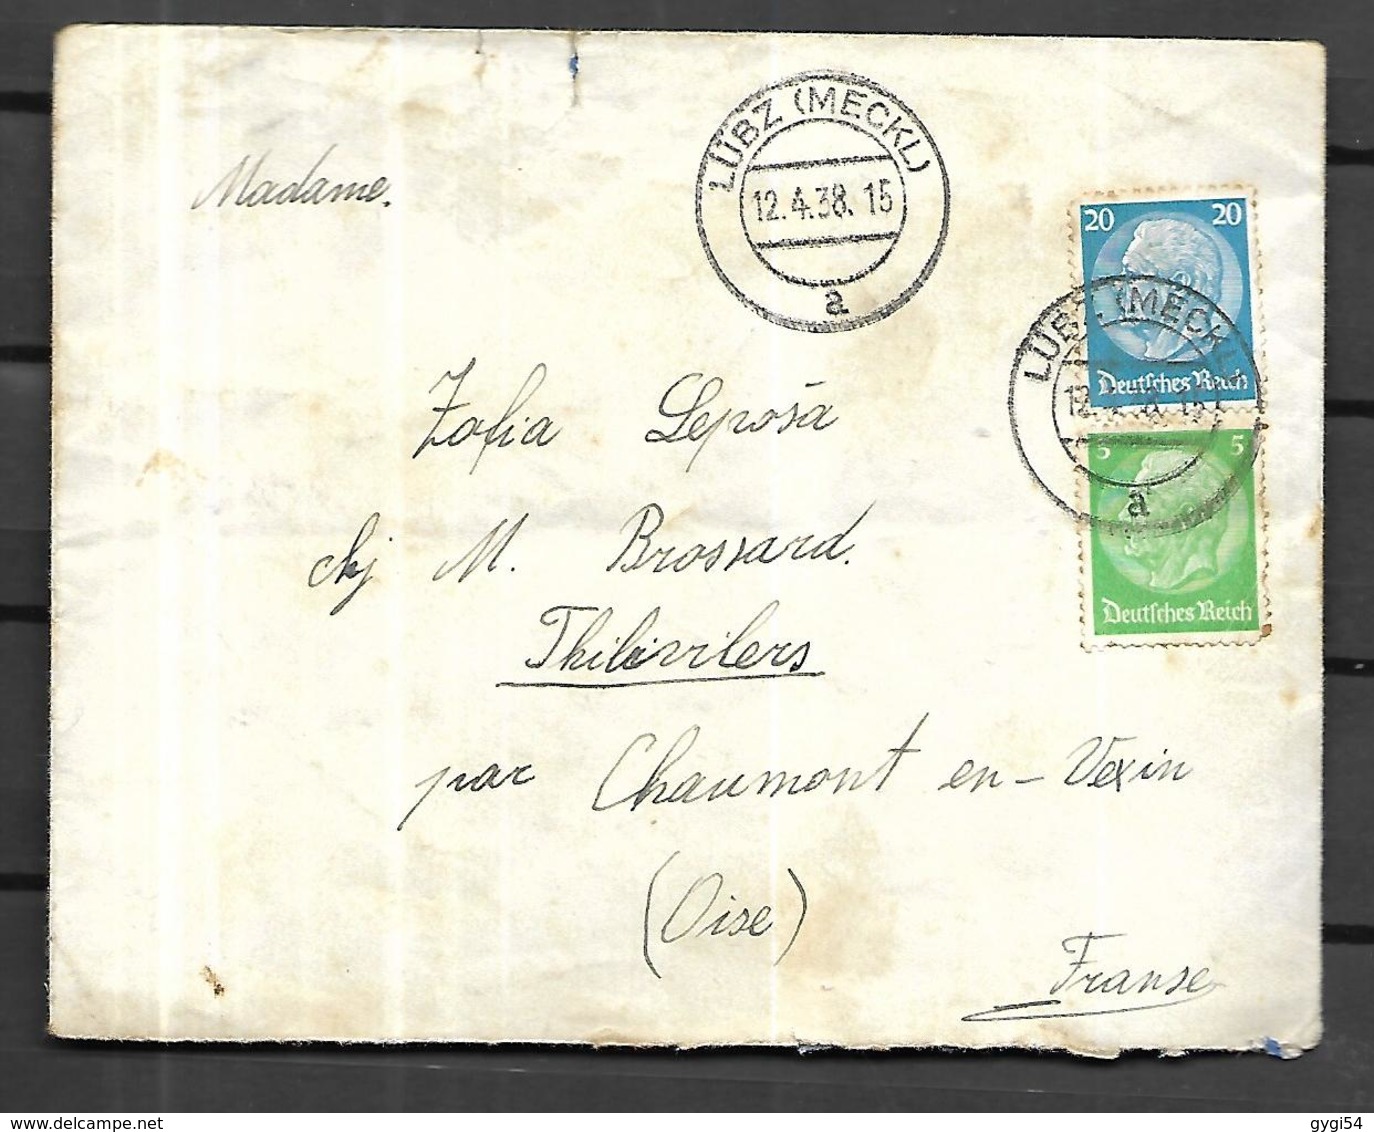 Allemagne   III Reich 1938  Lettre De Lubz  ( Mecklembourg  ) Vers Chaumont En Vexin  Dans L' Oise ) - Lettres & Documents